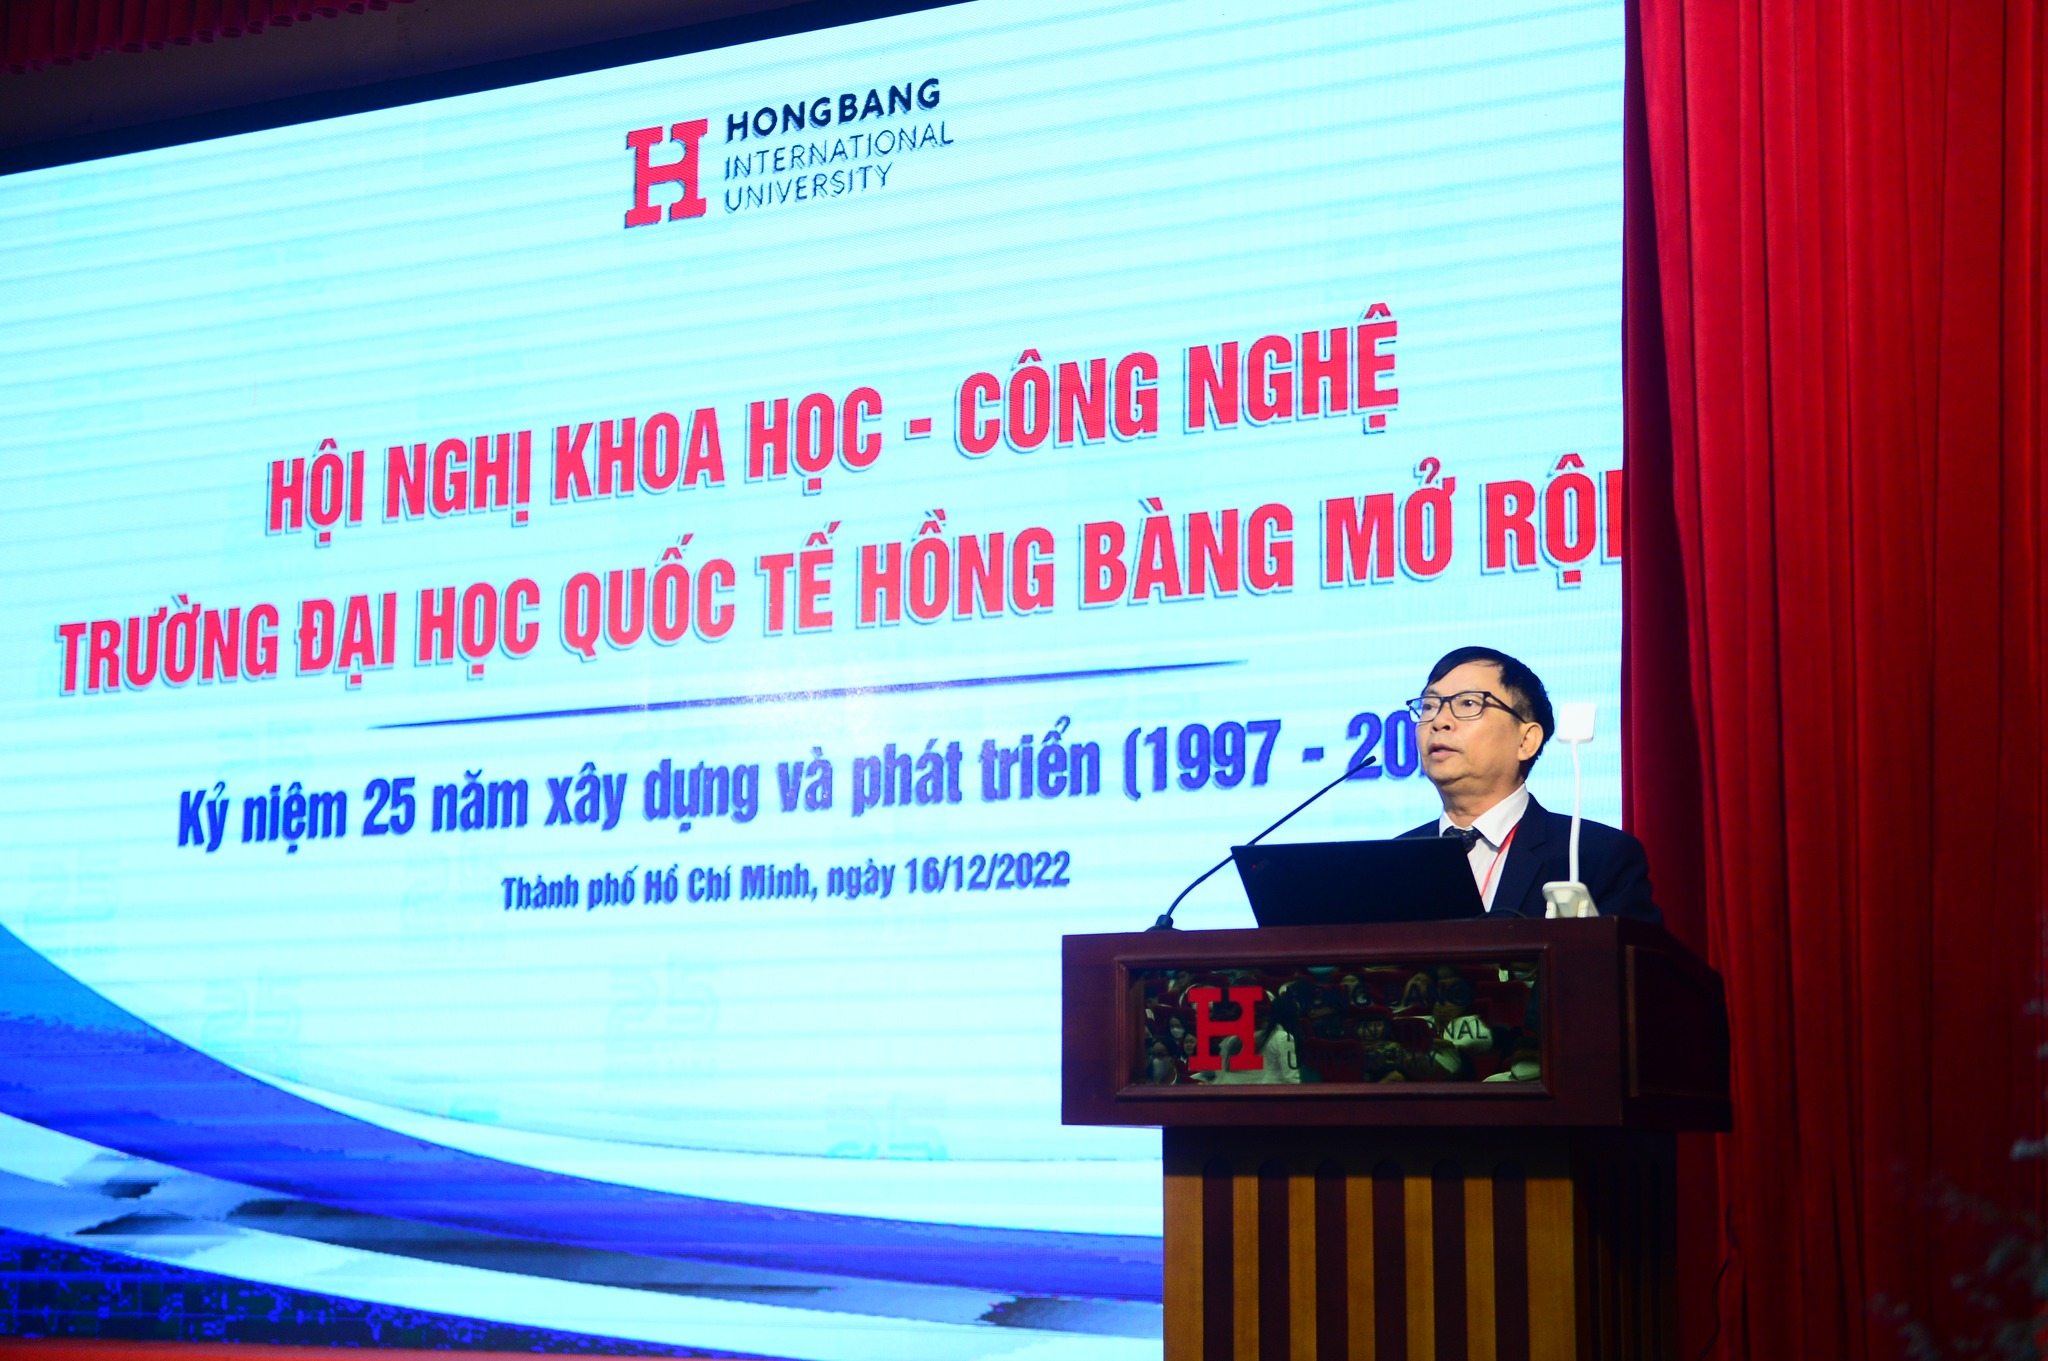 khoa hoc Trường Đại Học Quốc Tế Hồng Bàng vinh dự nhận bằng khen của Thủ tướng Chính Phủ nhân Ngày Kỷ niệm 25 năm thành lập